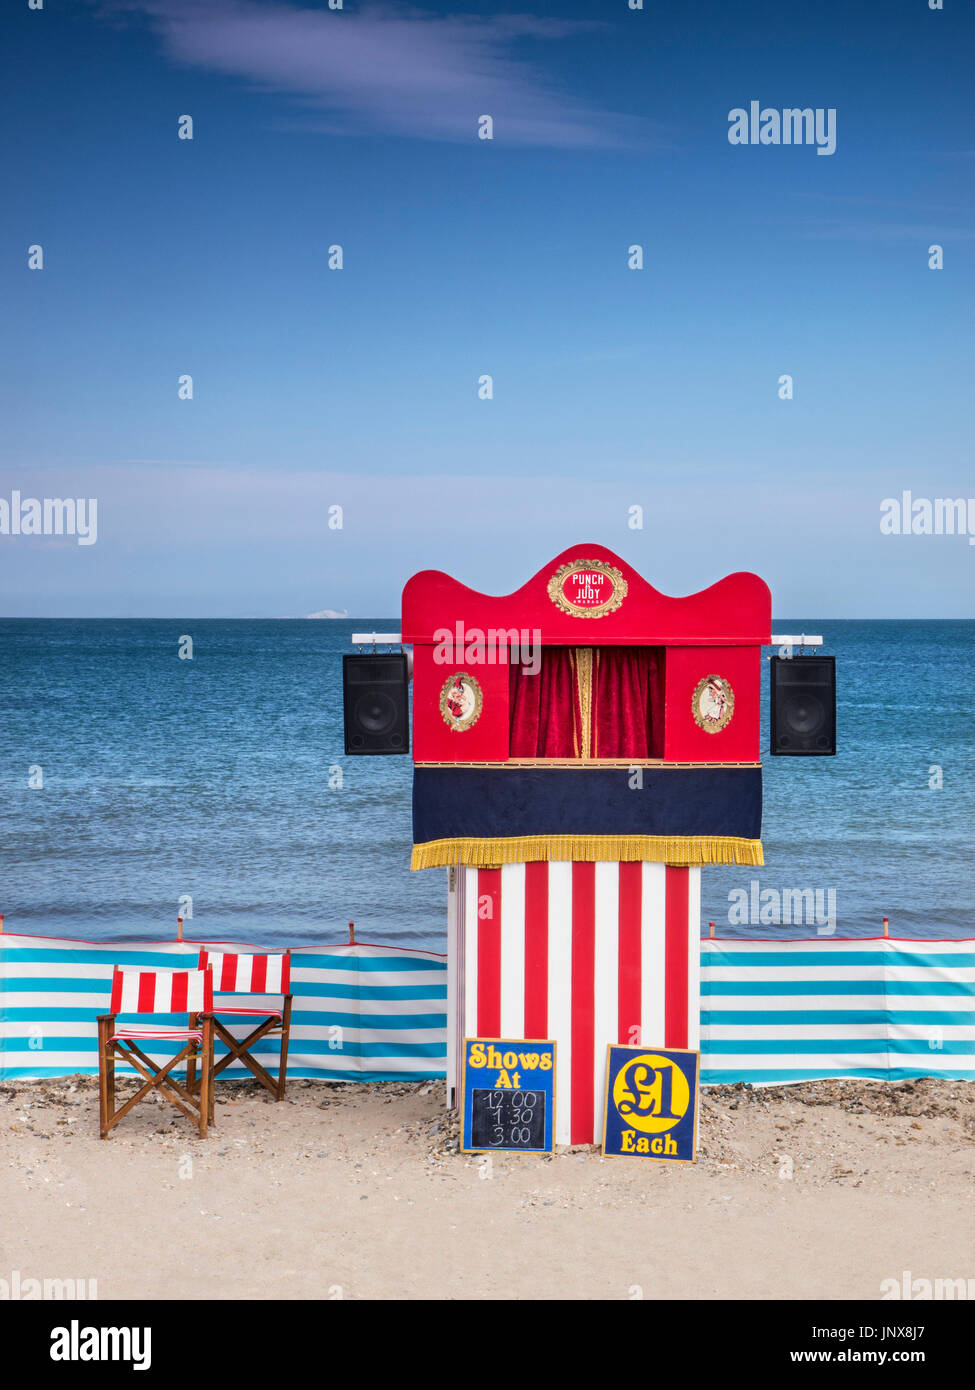 British Seaside Staycation Konzept Punch und Judy Stand am Swanage Strand Dorset UK. Ikonisches traditionelles britisches Familienunterhaltung am Meer Stockfoto